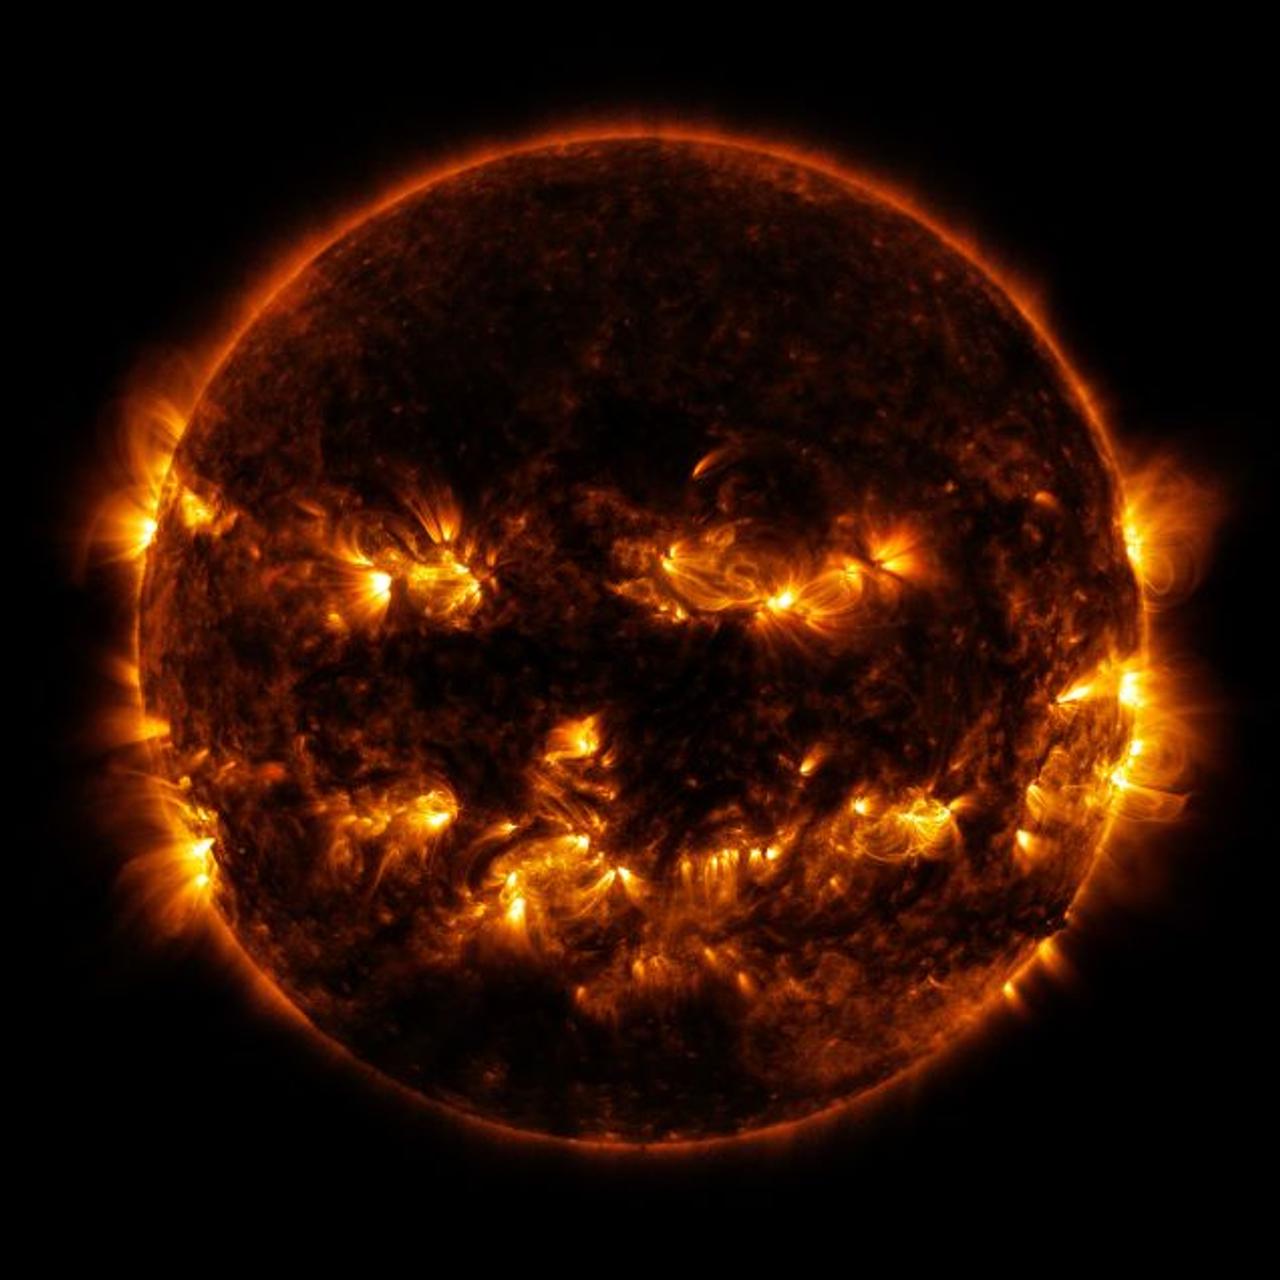 ｢ぐへへ…間に合ったぜ…｣ 不気味に笑う太陽の写真をNASAが公開